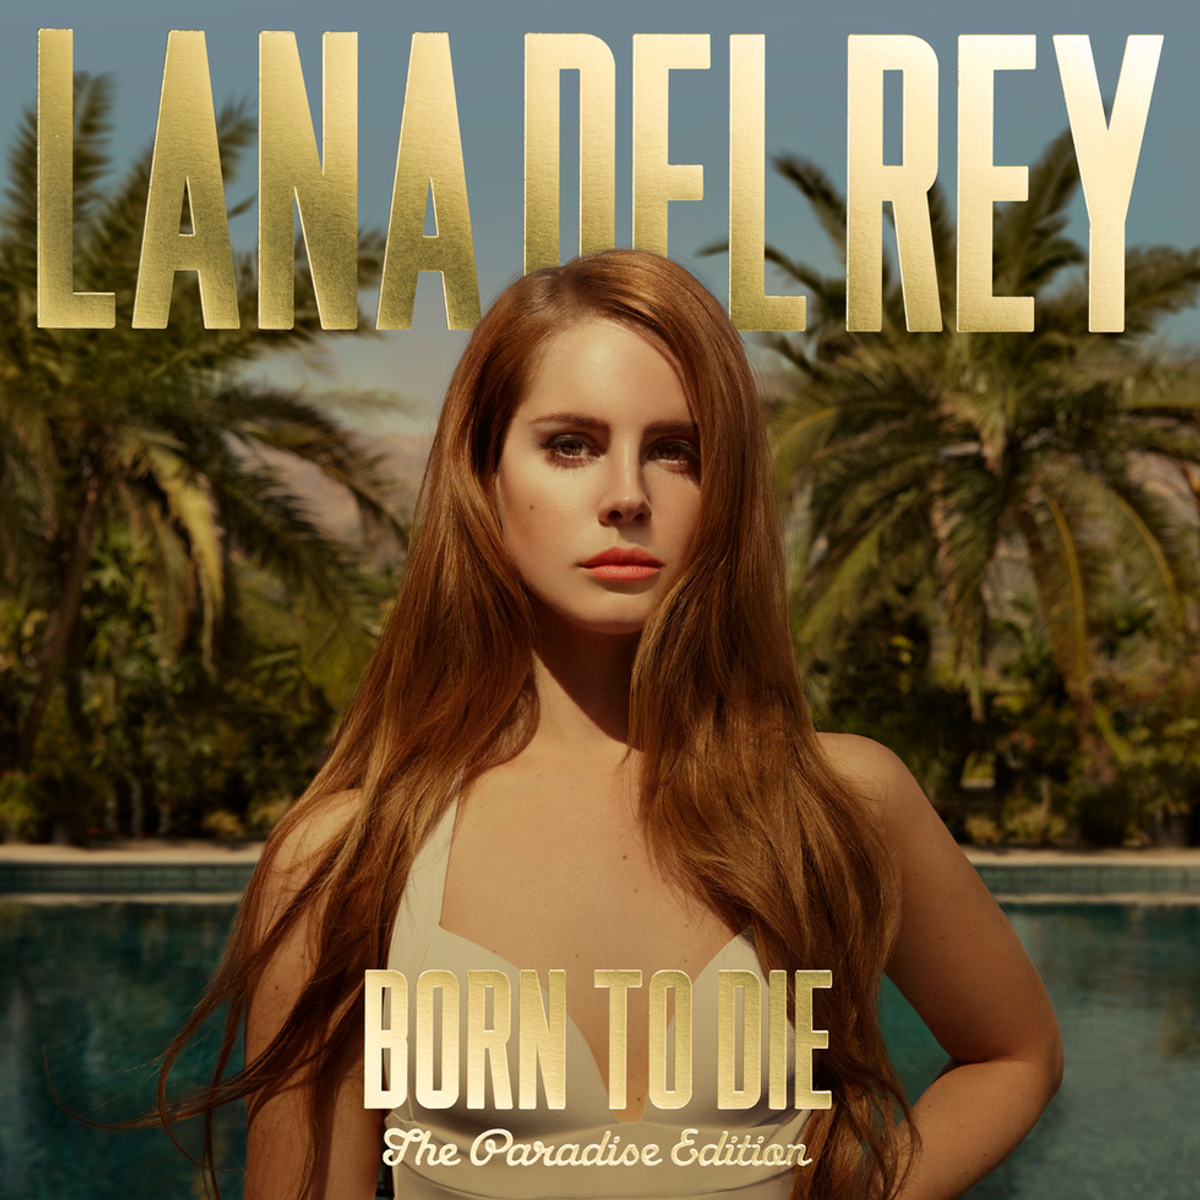 My Top 5 Favorite Lana Del Rey Songs